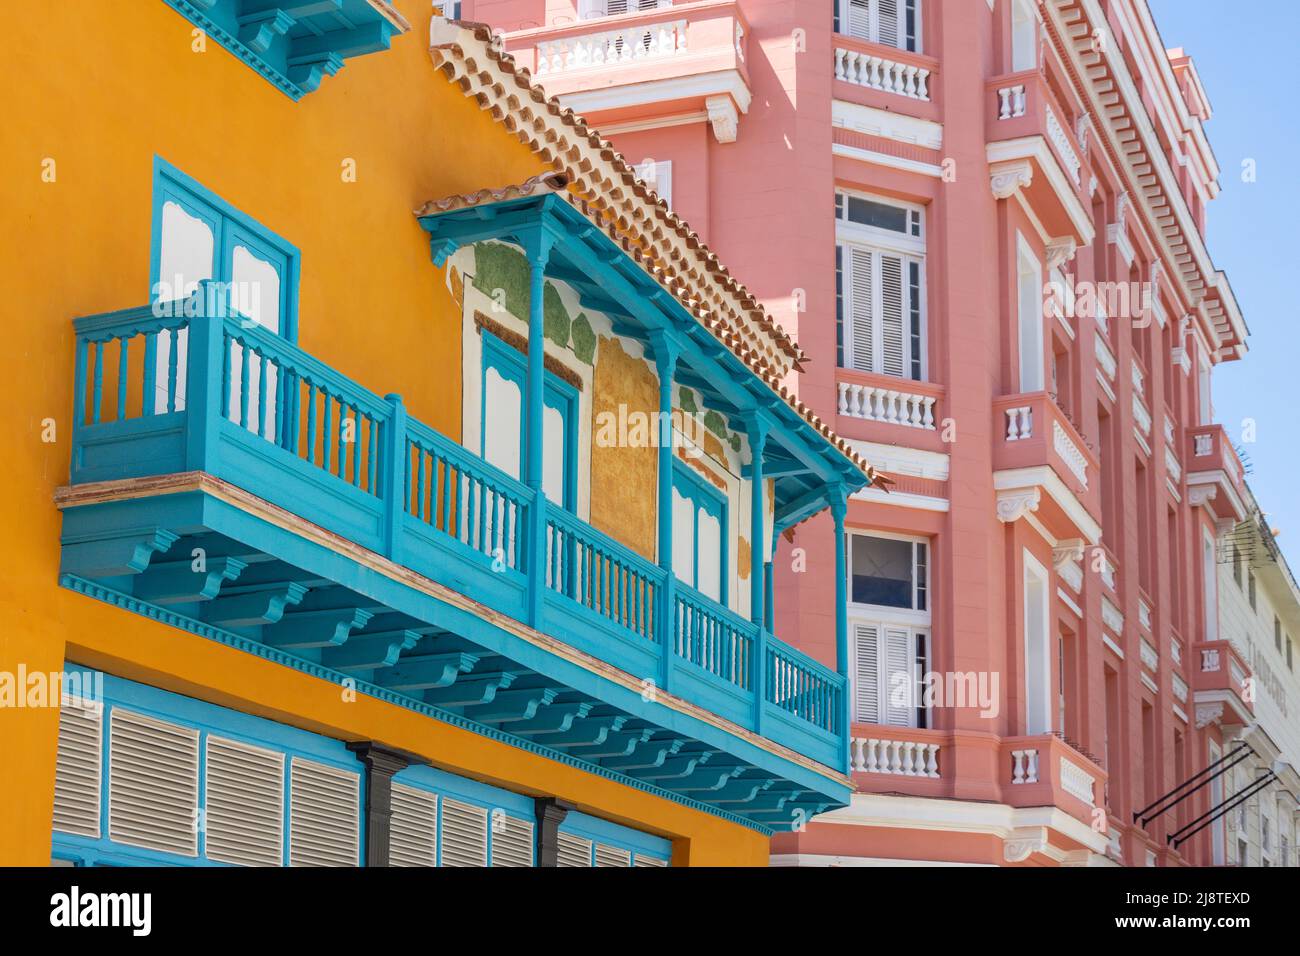 Architettura coloniale colorata, Obispo, l'Avana Vecchia, l'Avana, la Habana, Repubblica di Cuba Foto Stock